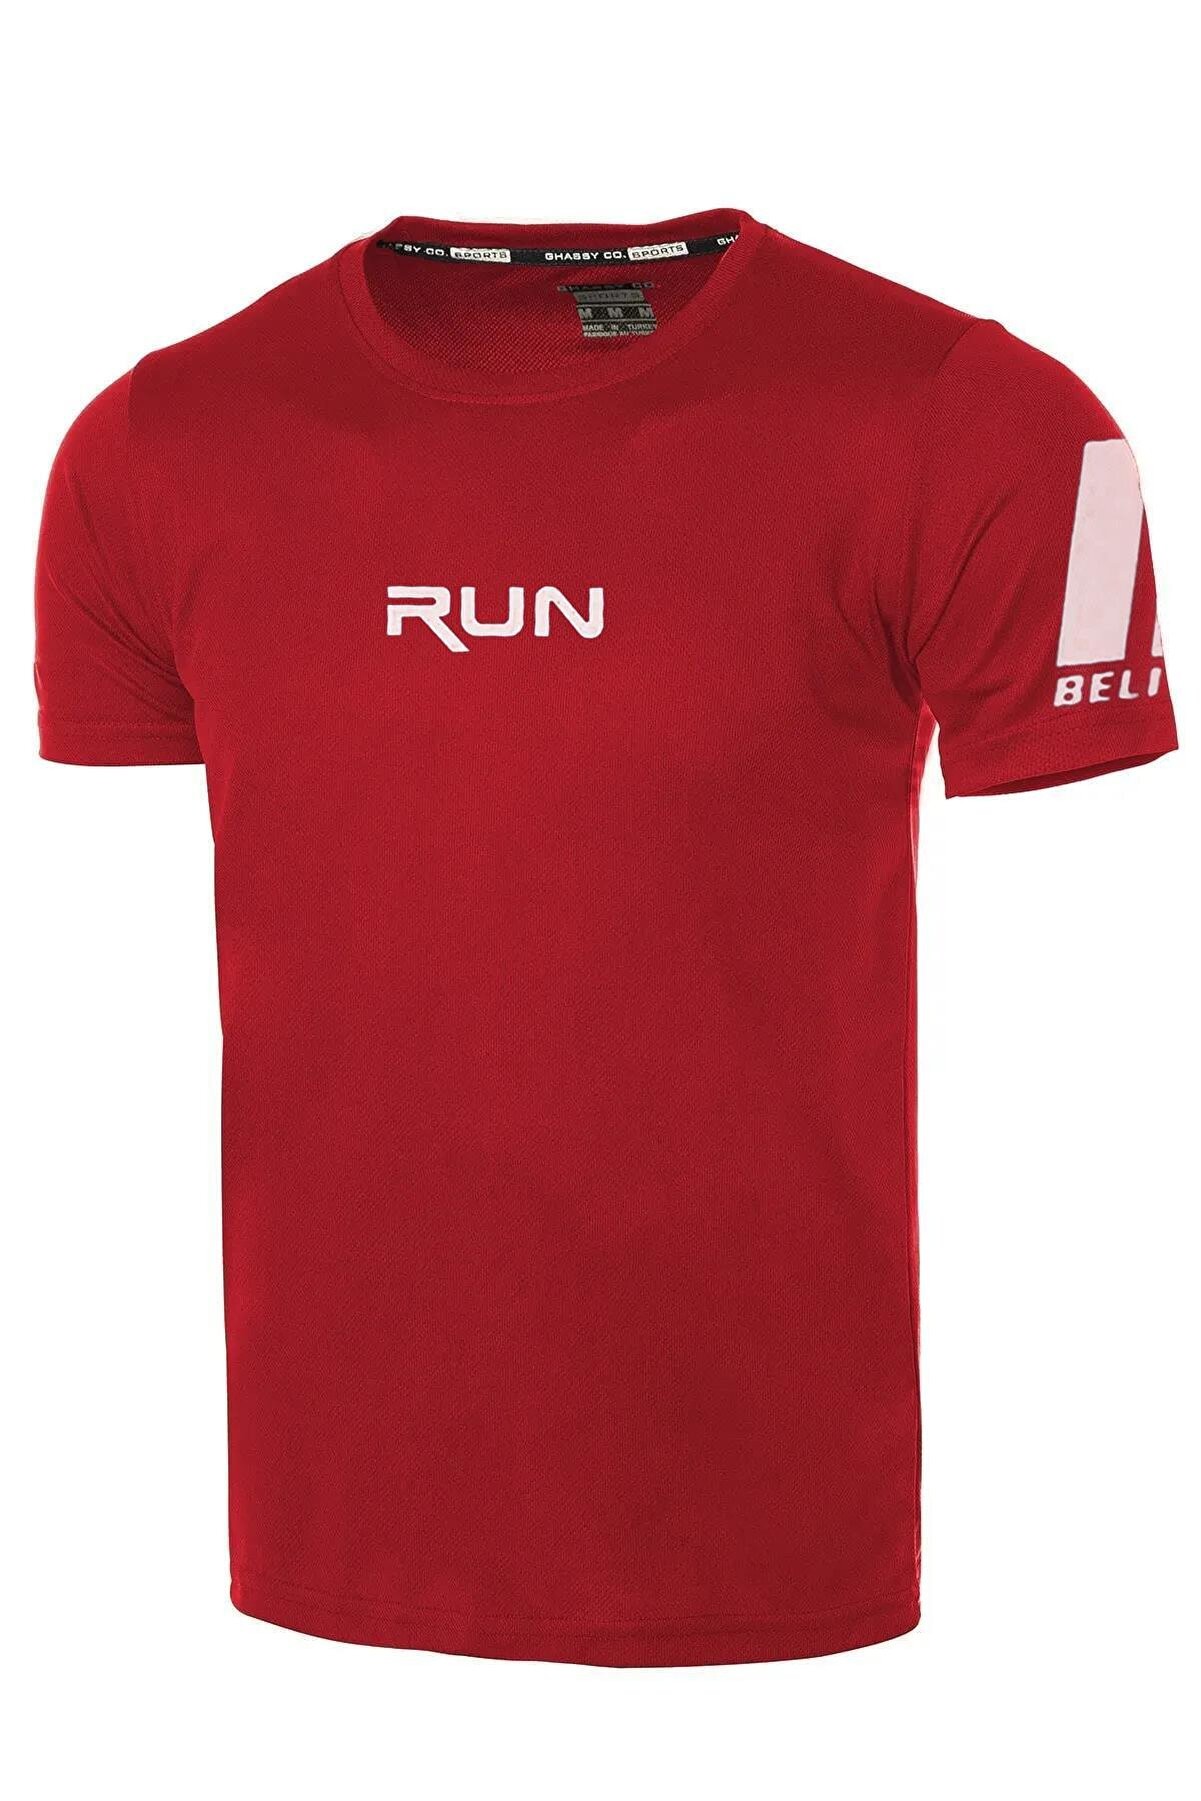 Ghassy Co Ghassy Co. Erkek Nem Emici Hızlı Kuruma Performans Running Spor T-shirt - Kırmızı